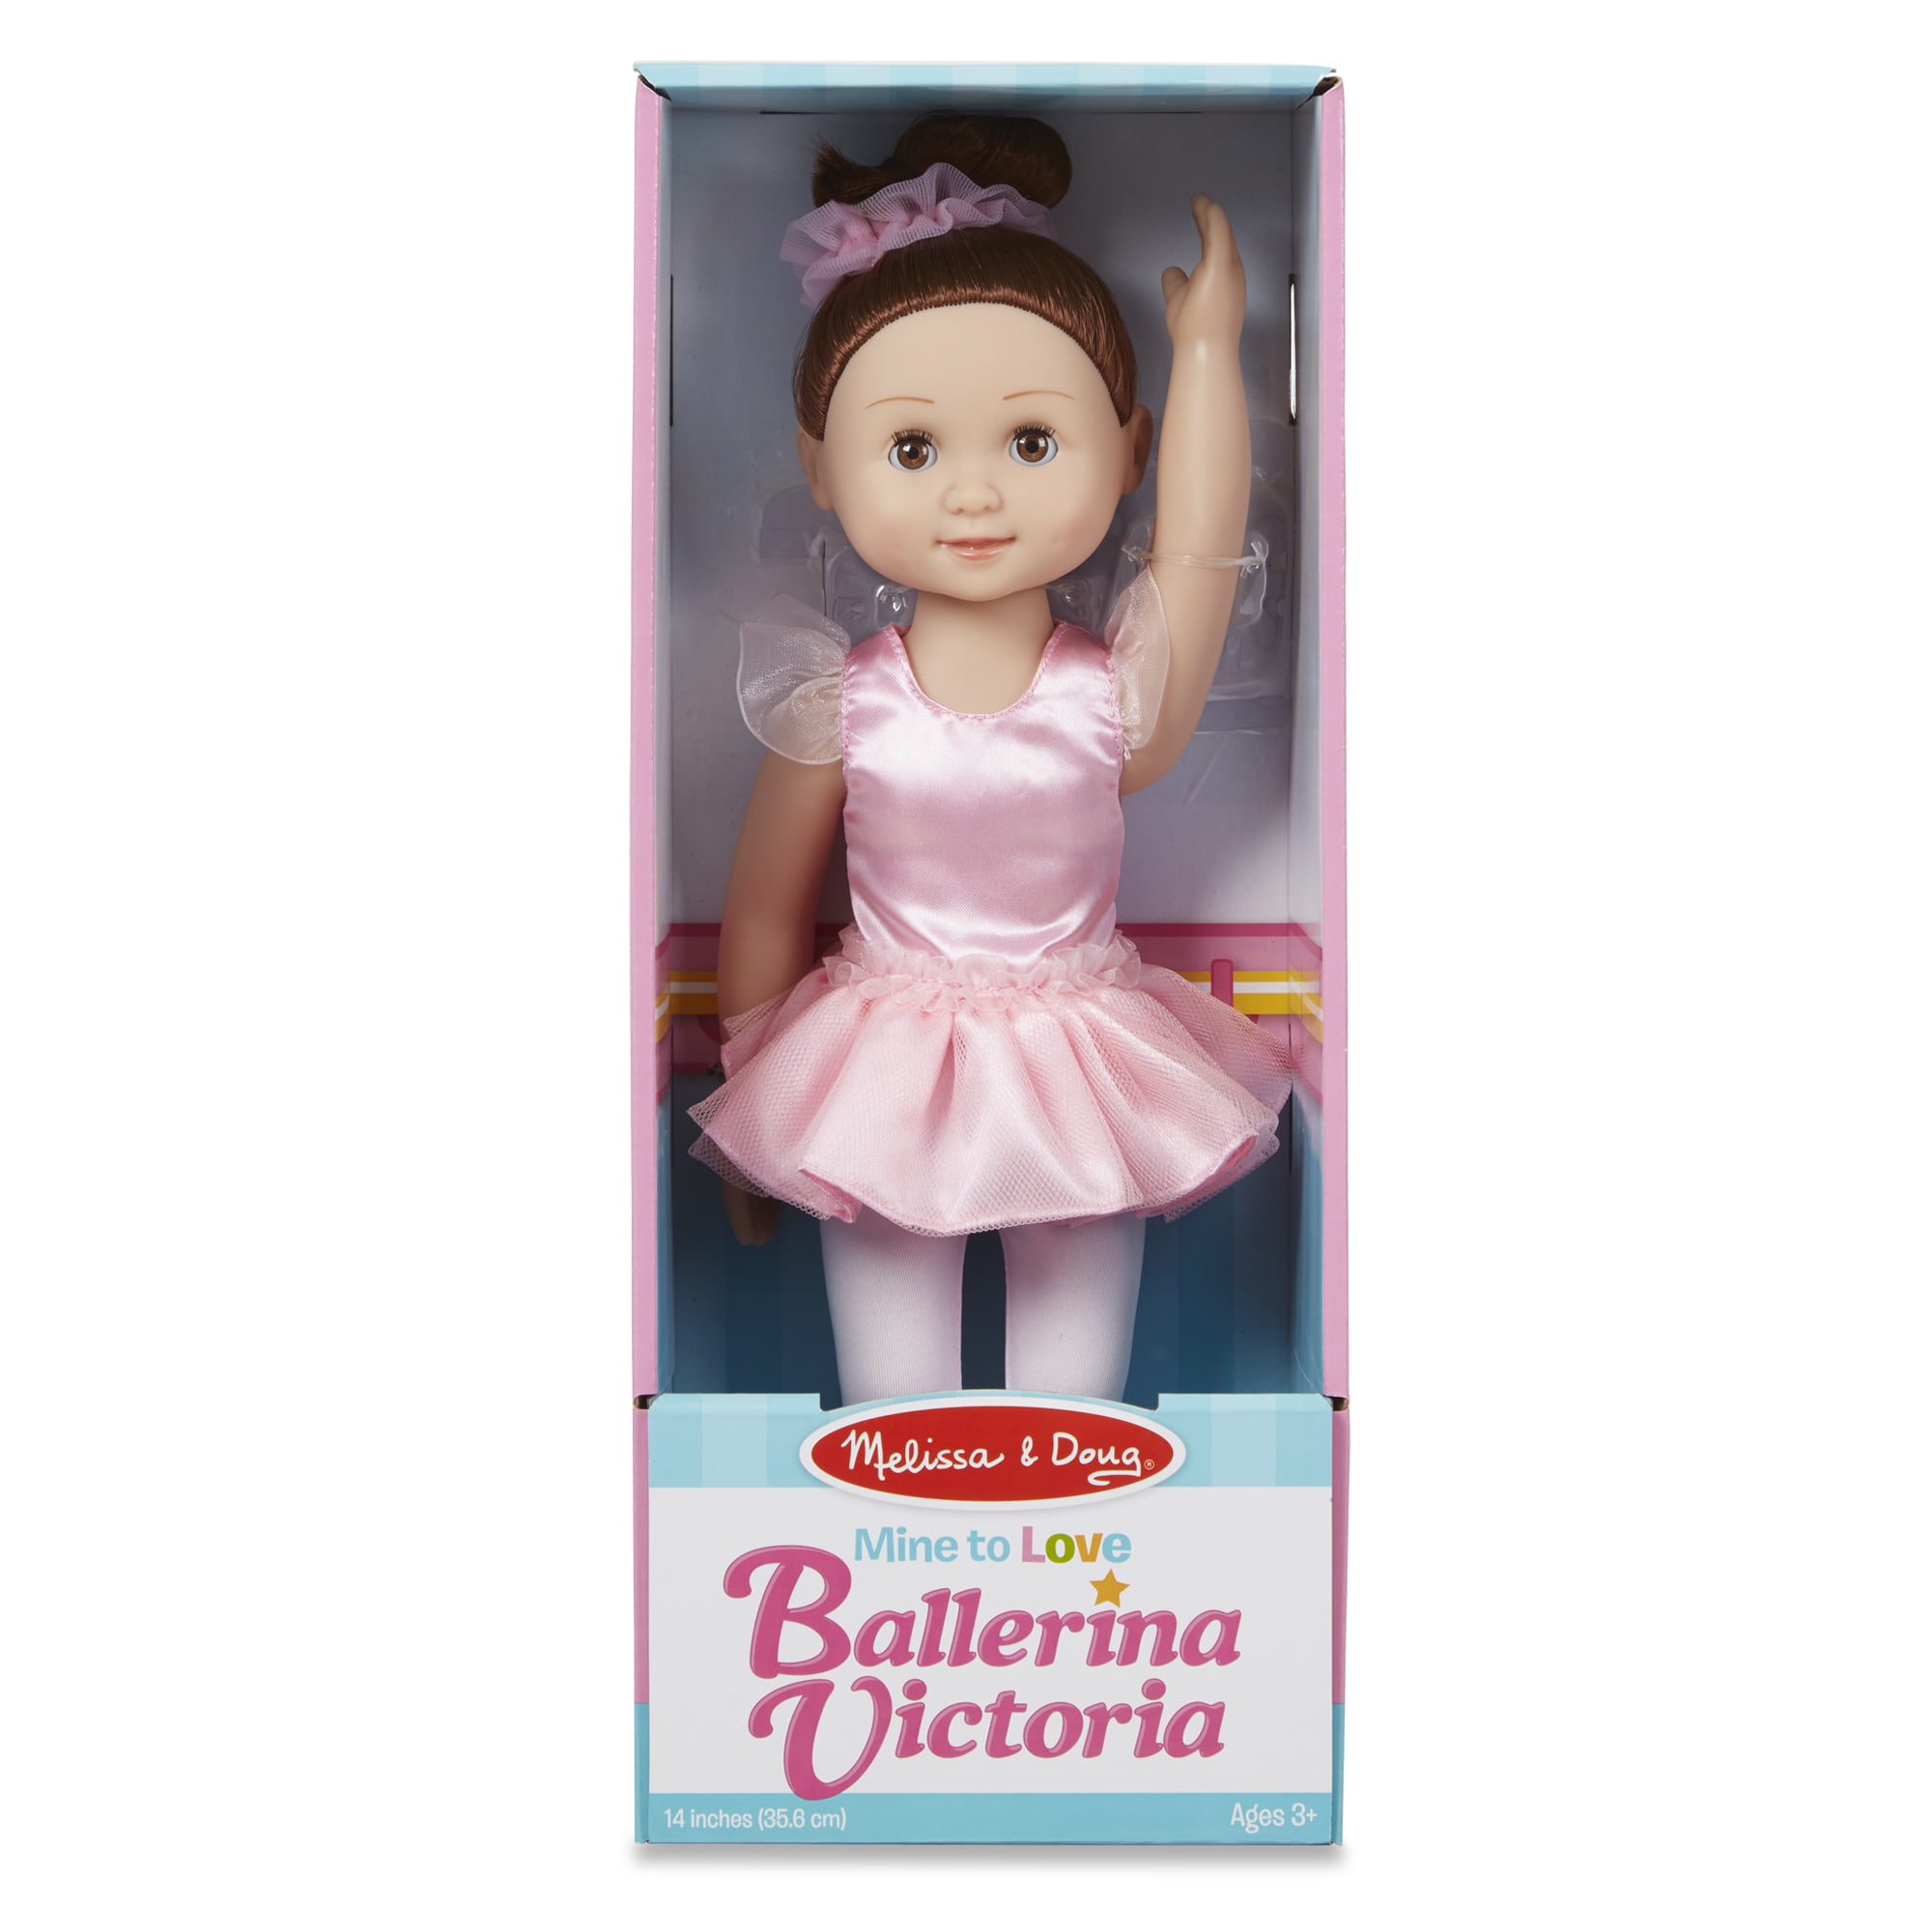 MELISSA & Doug Victoria 14-Inch poseable Ballerina Bambola 14887 